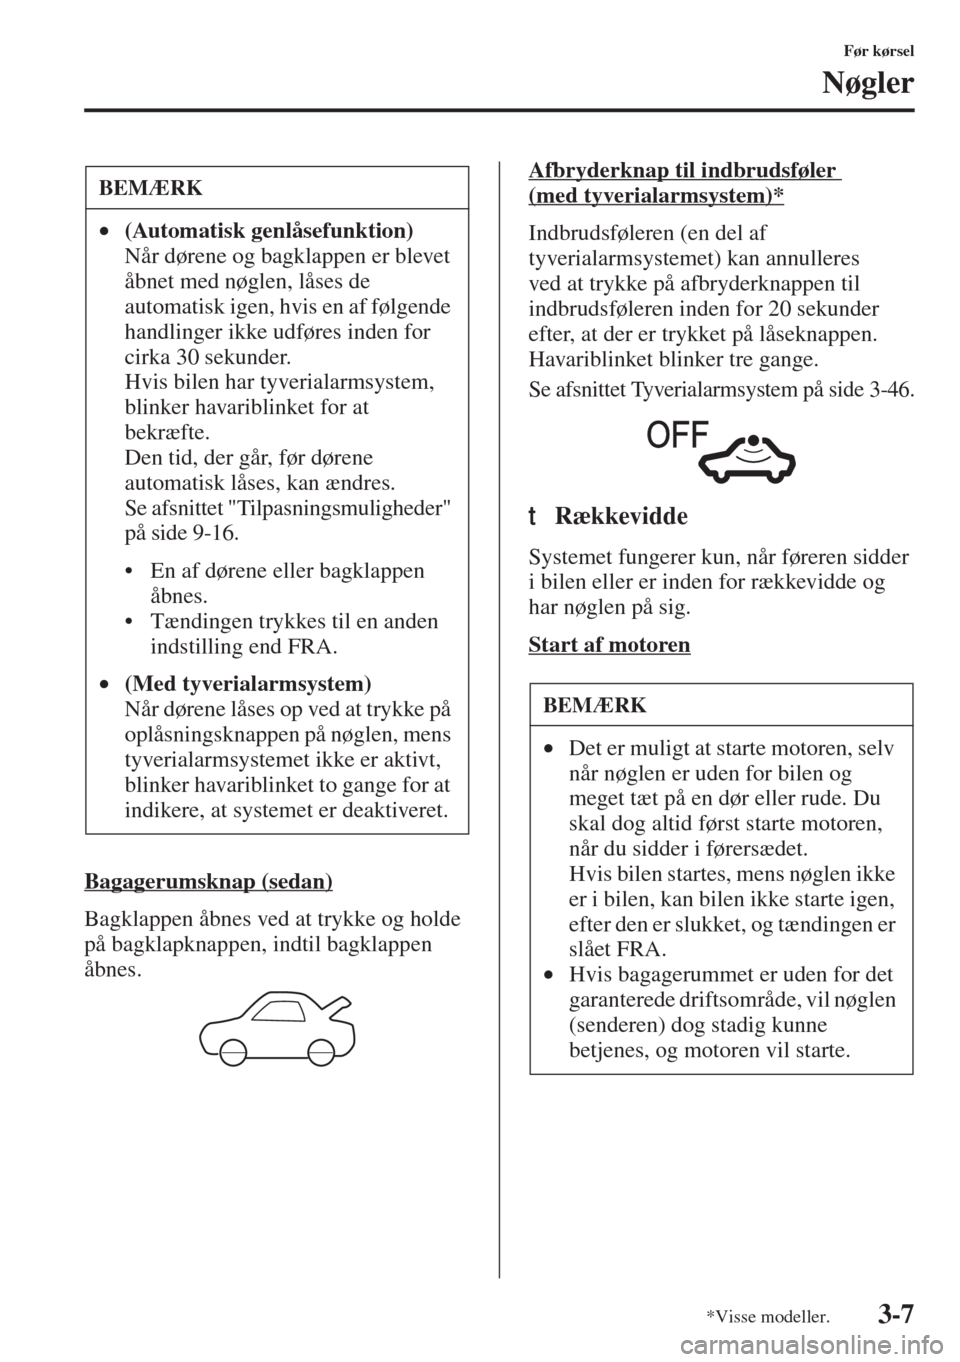 MAZDA MODEL 3 HATCHBACK 2015  Instruktionsbog (in Danish) 3-7
Før kørsel
Nøgler
Bagagerumsknap (sedan)
Bagklappen åbnes ved at trykke og holde 
på bagklapknappen, indtil bagklappen 
åbnes.Afbryderknap til indbrudsføler 
(med tyverialarmsystem)*
Indbru